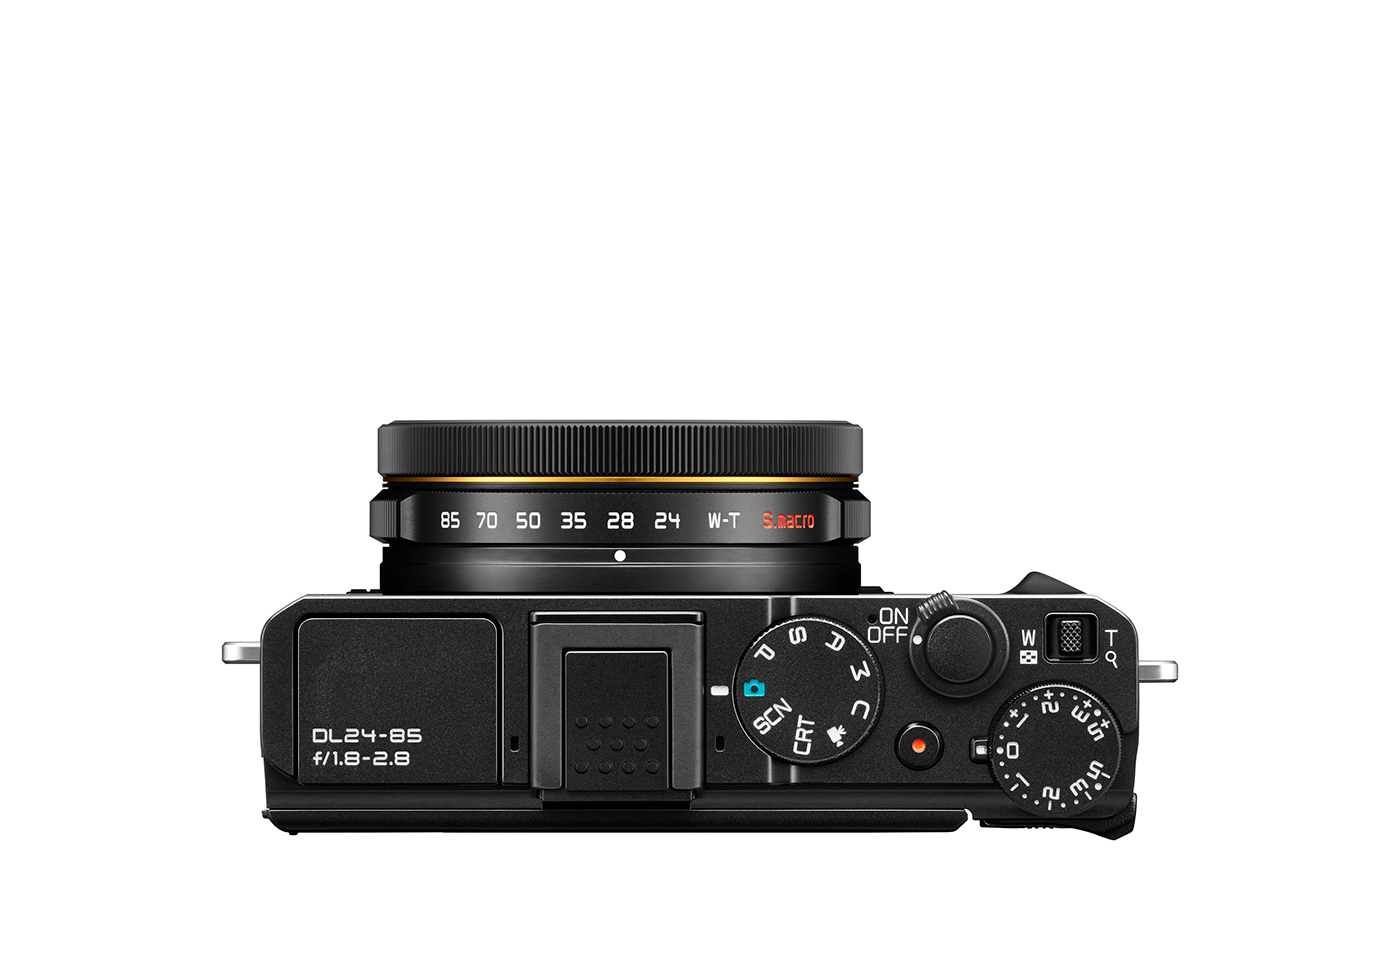 camera design product Nikon premium black cmf CAM Audio tool